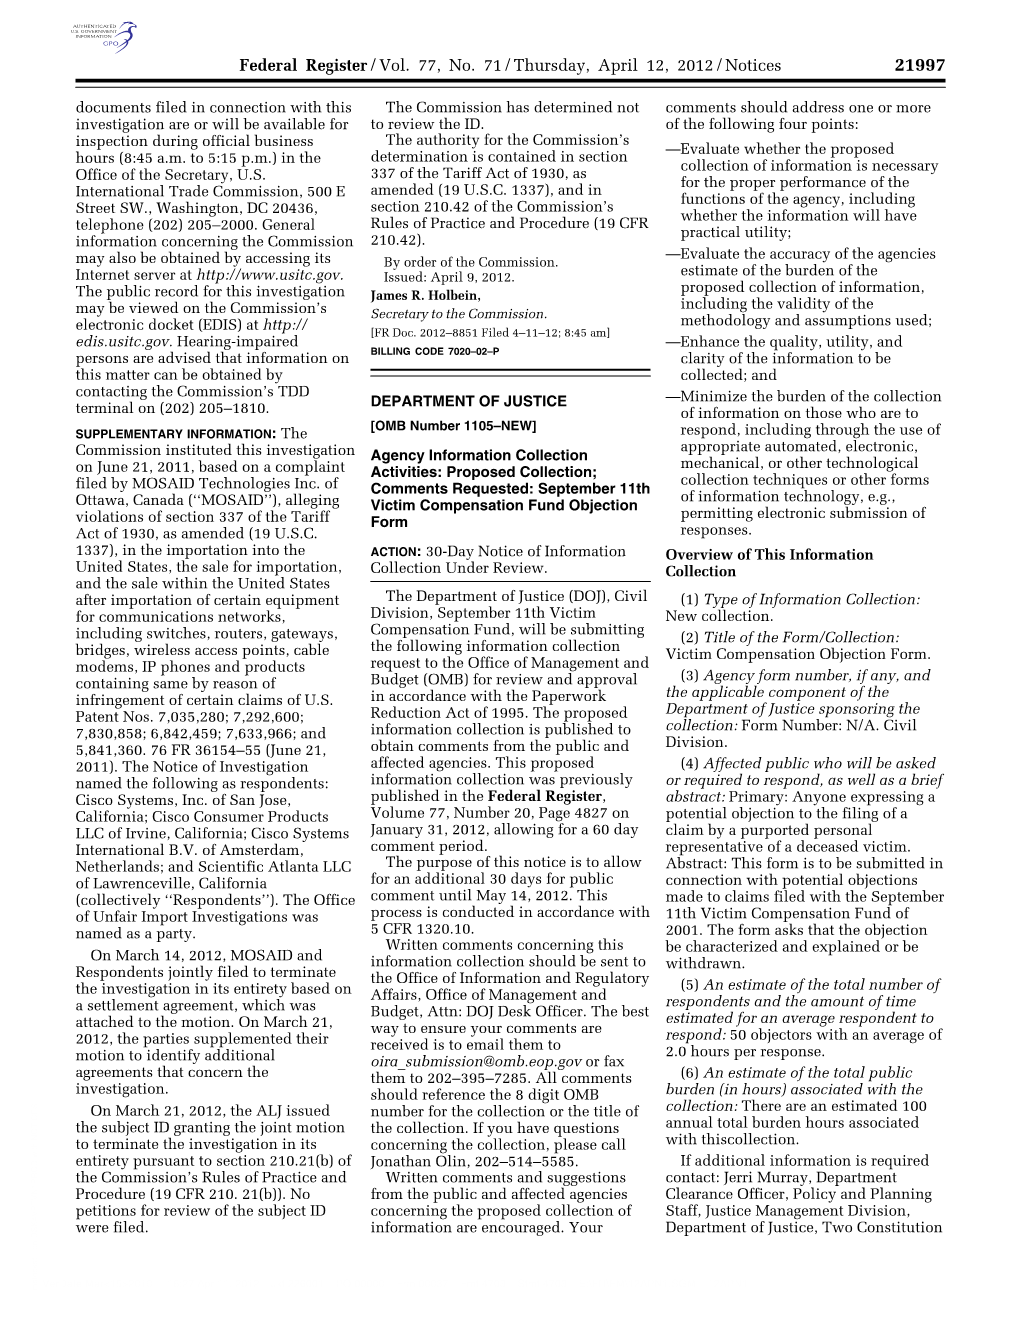 Federal Register/Vol. 77, No. 71/Thursday, April 12, 2012/Notices